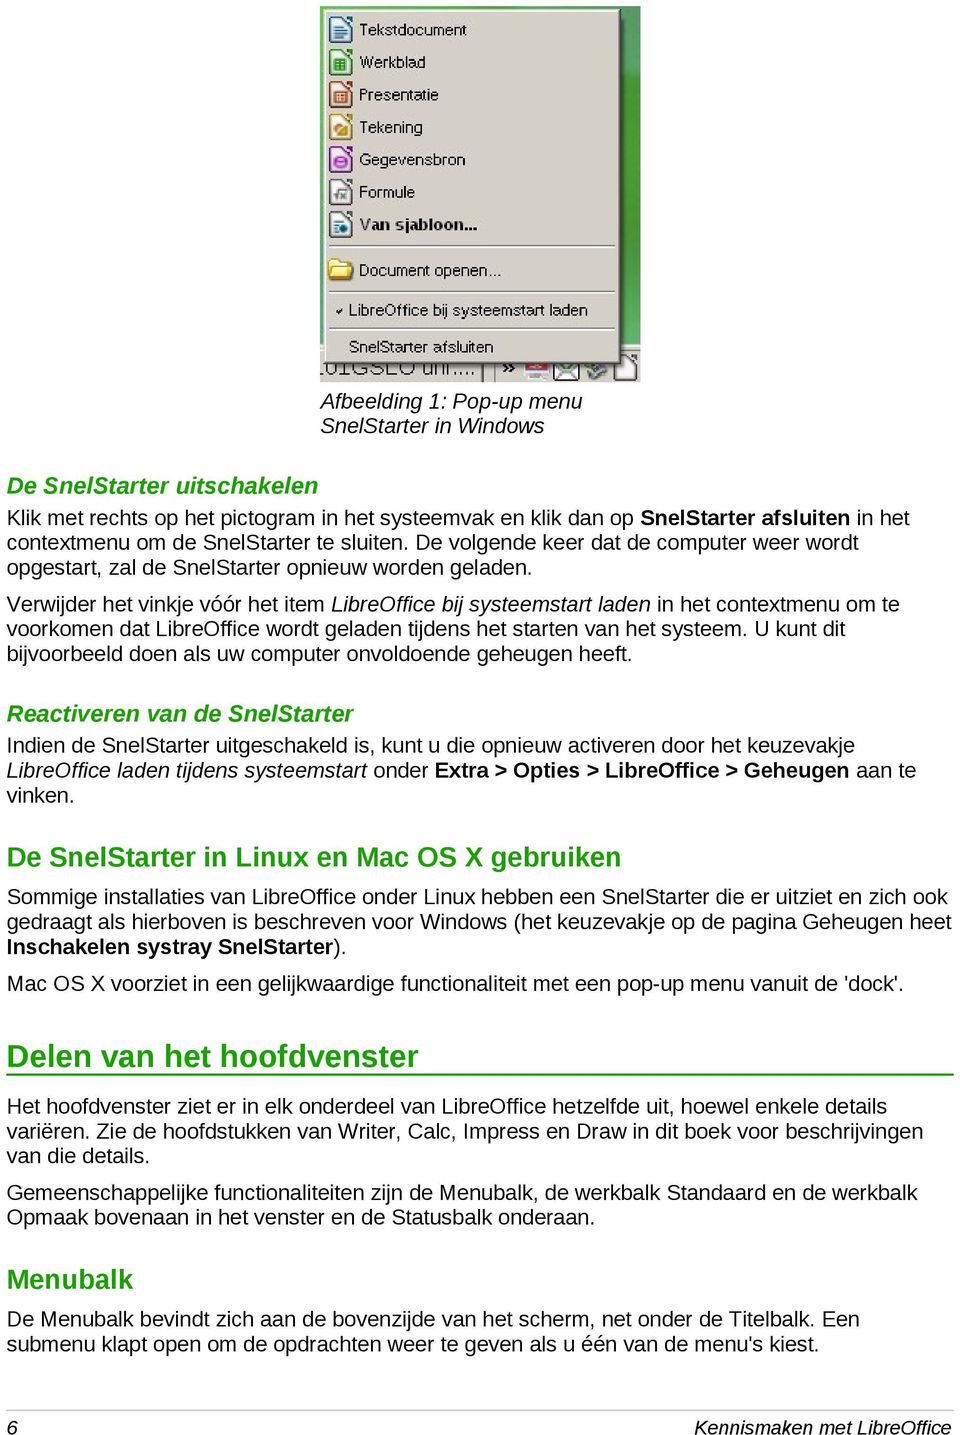 Verwijder het vinkje vóór het item LibreOffice bij systeemstart laden in het contextmenu om te voorkomen dat LibreOffice wordt geladen tijdens het starten van het systeem.